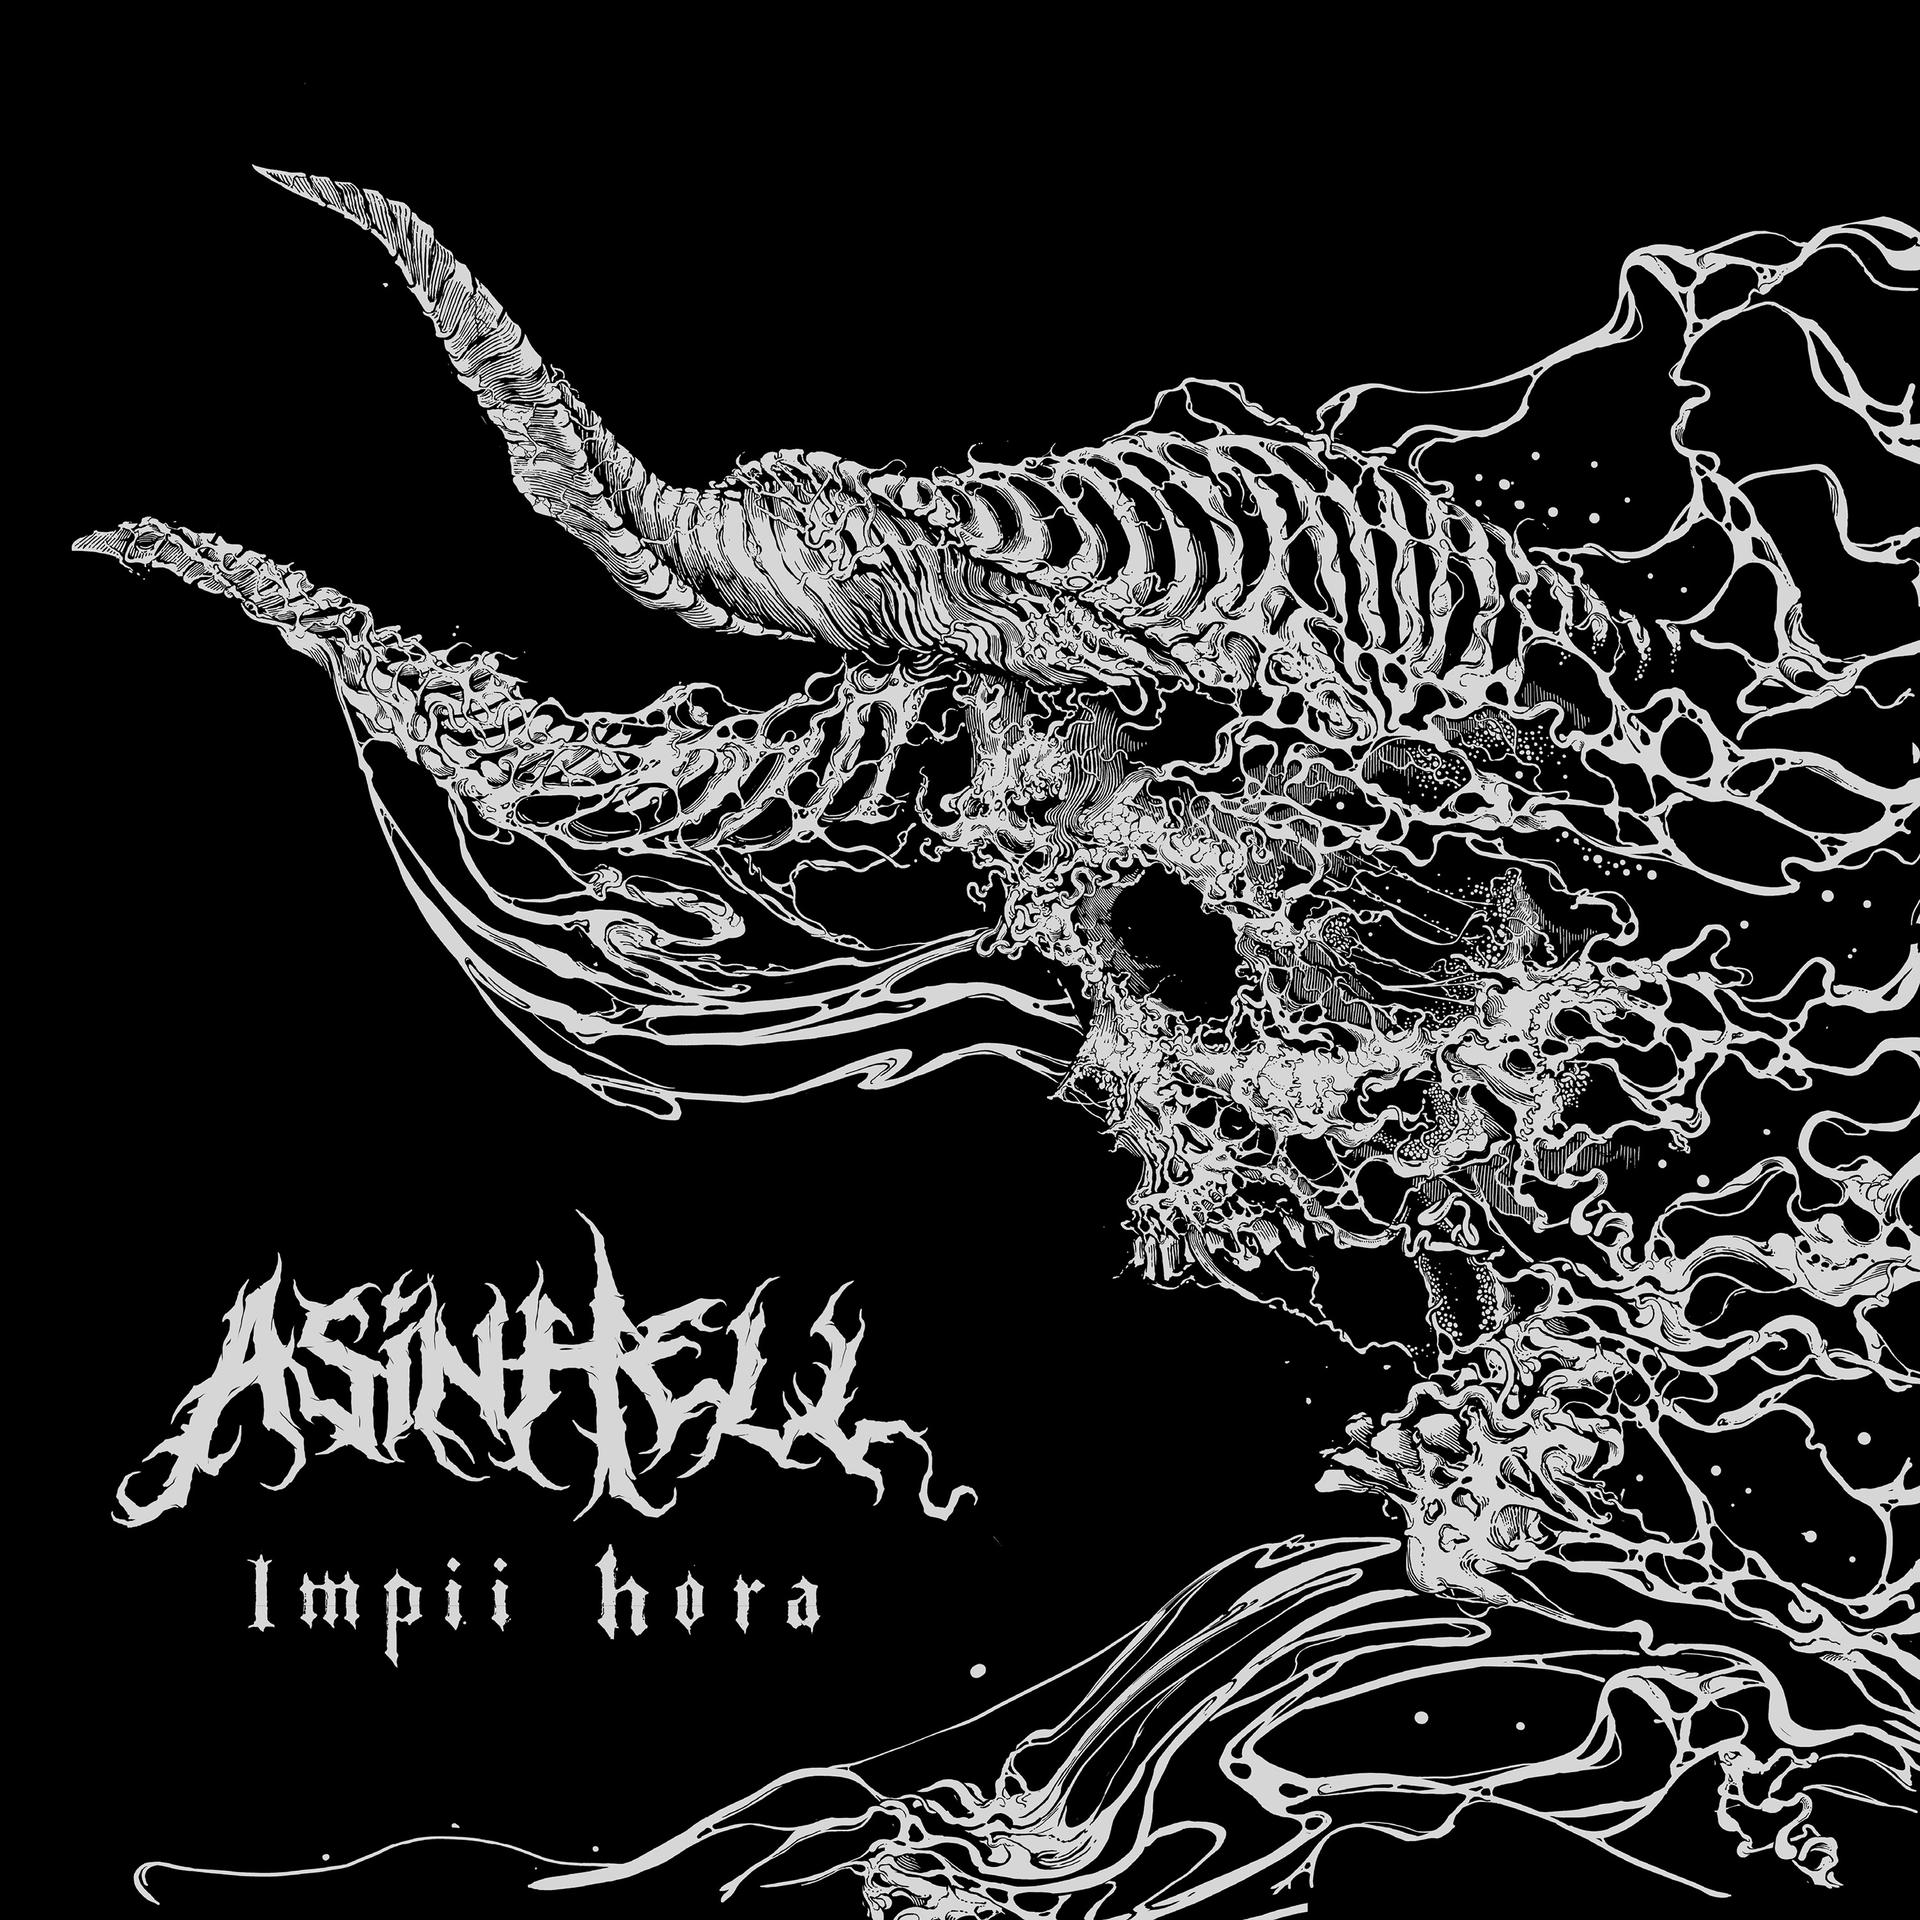 Asinhell - Impii Hora (Vinyl) 